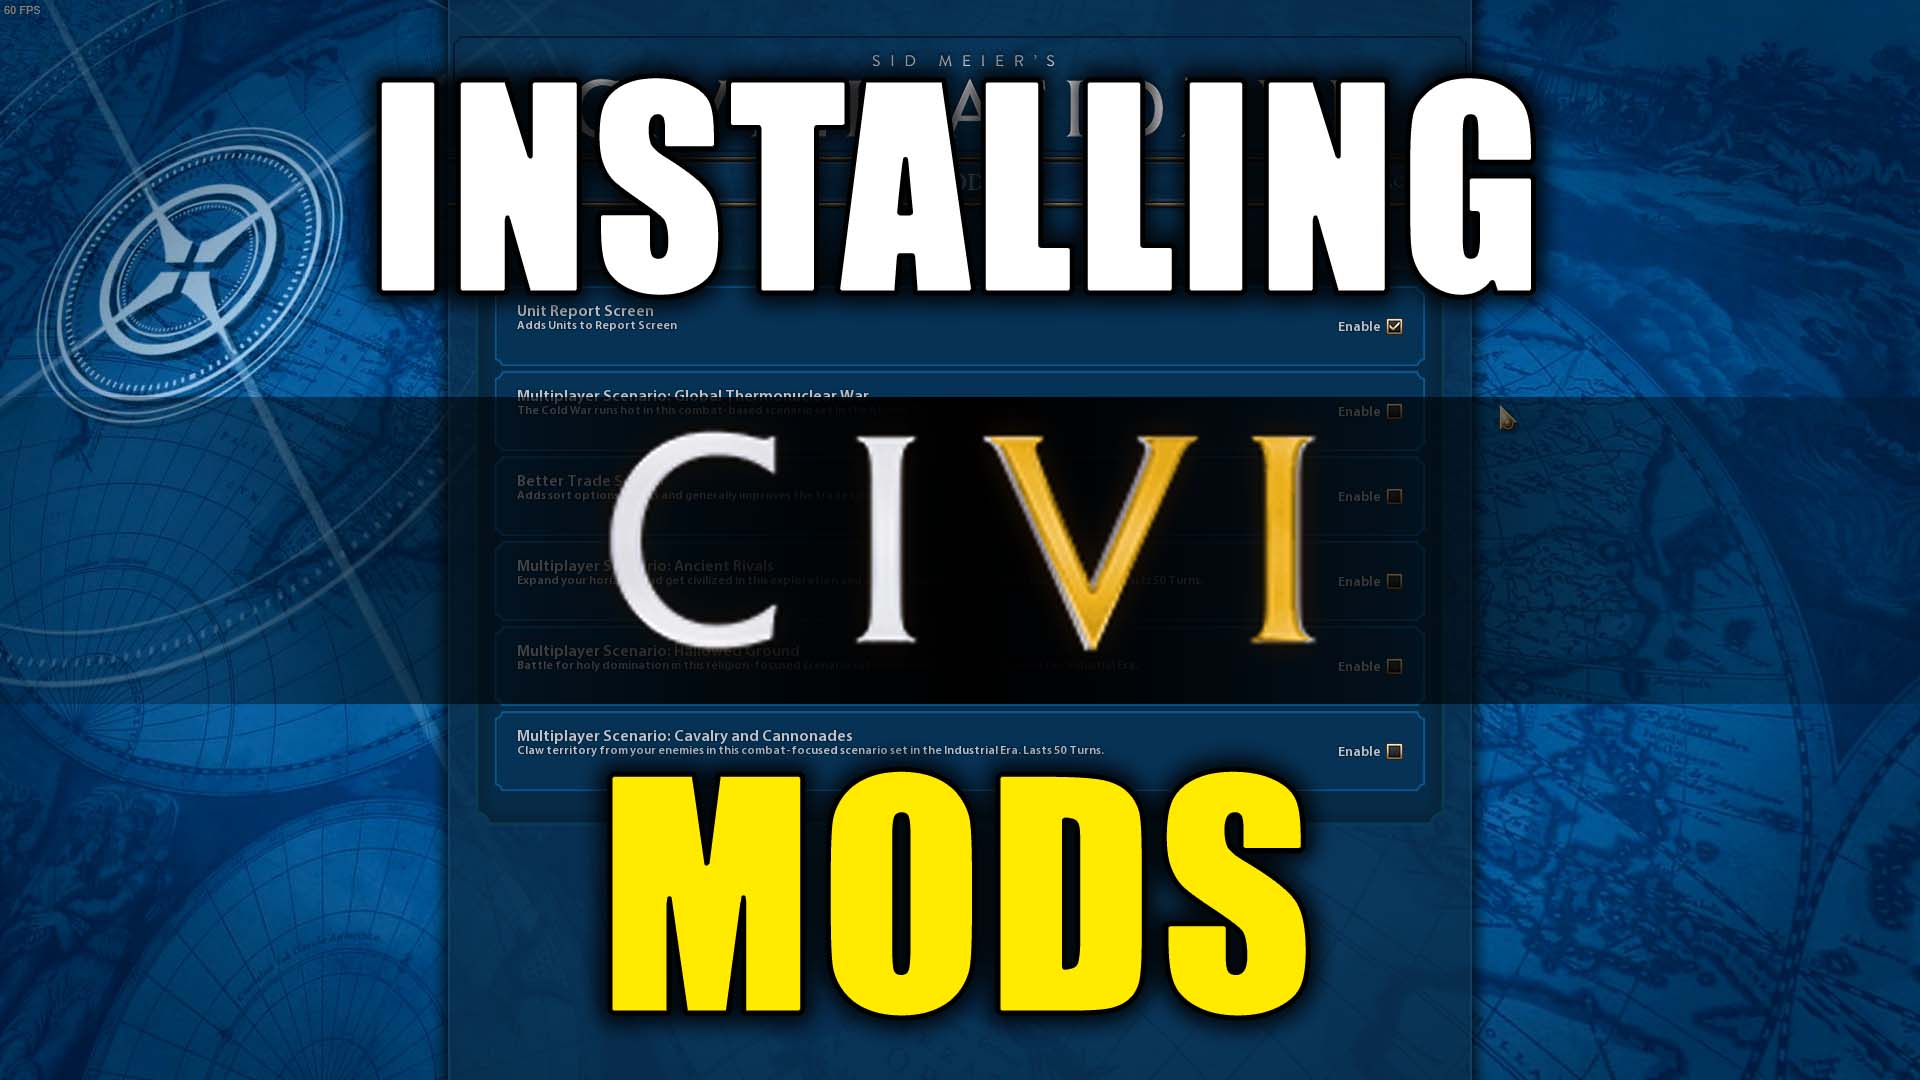 Civ4 Final Frontier Mod Download